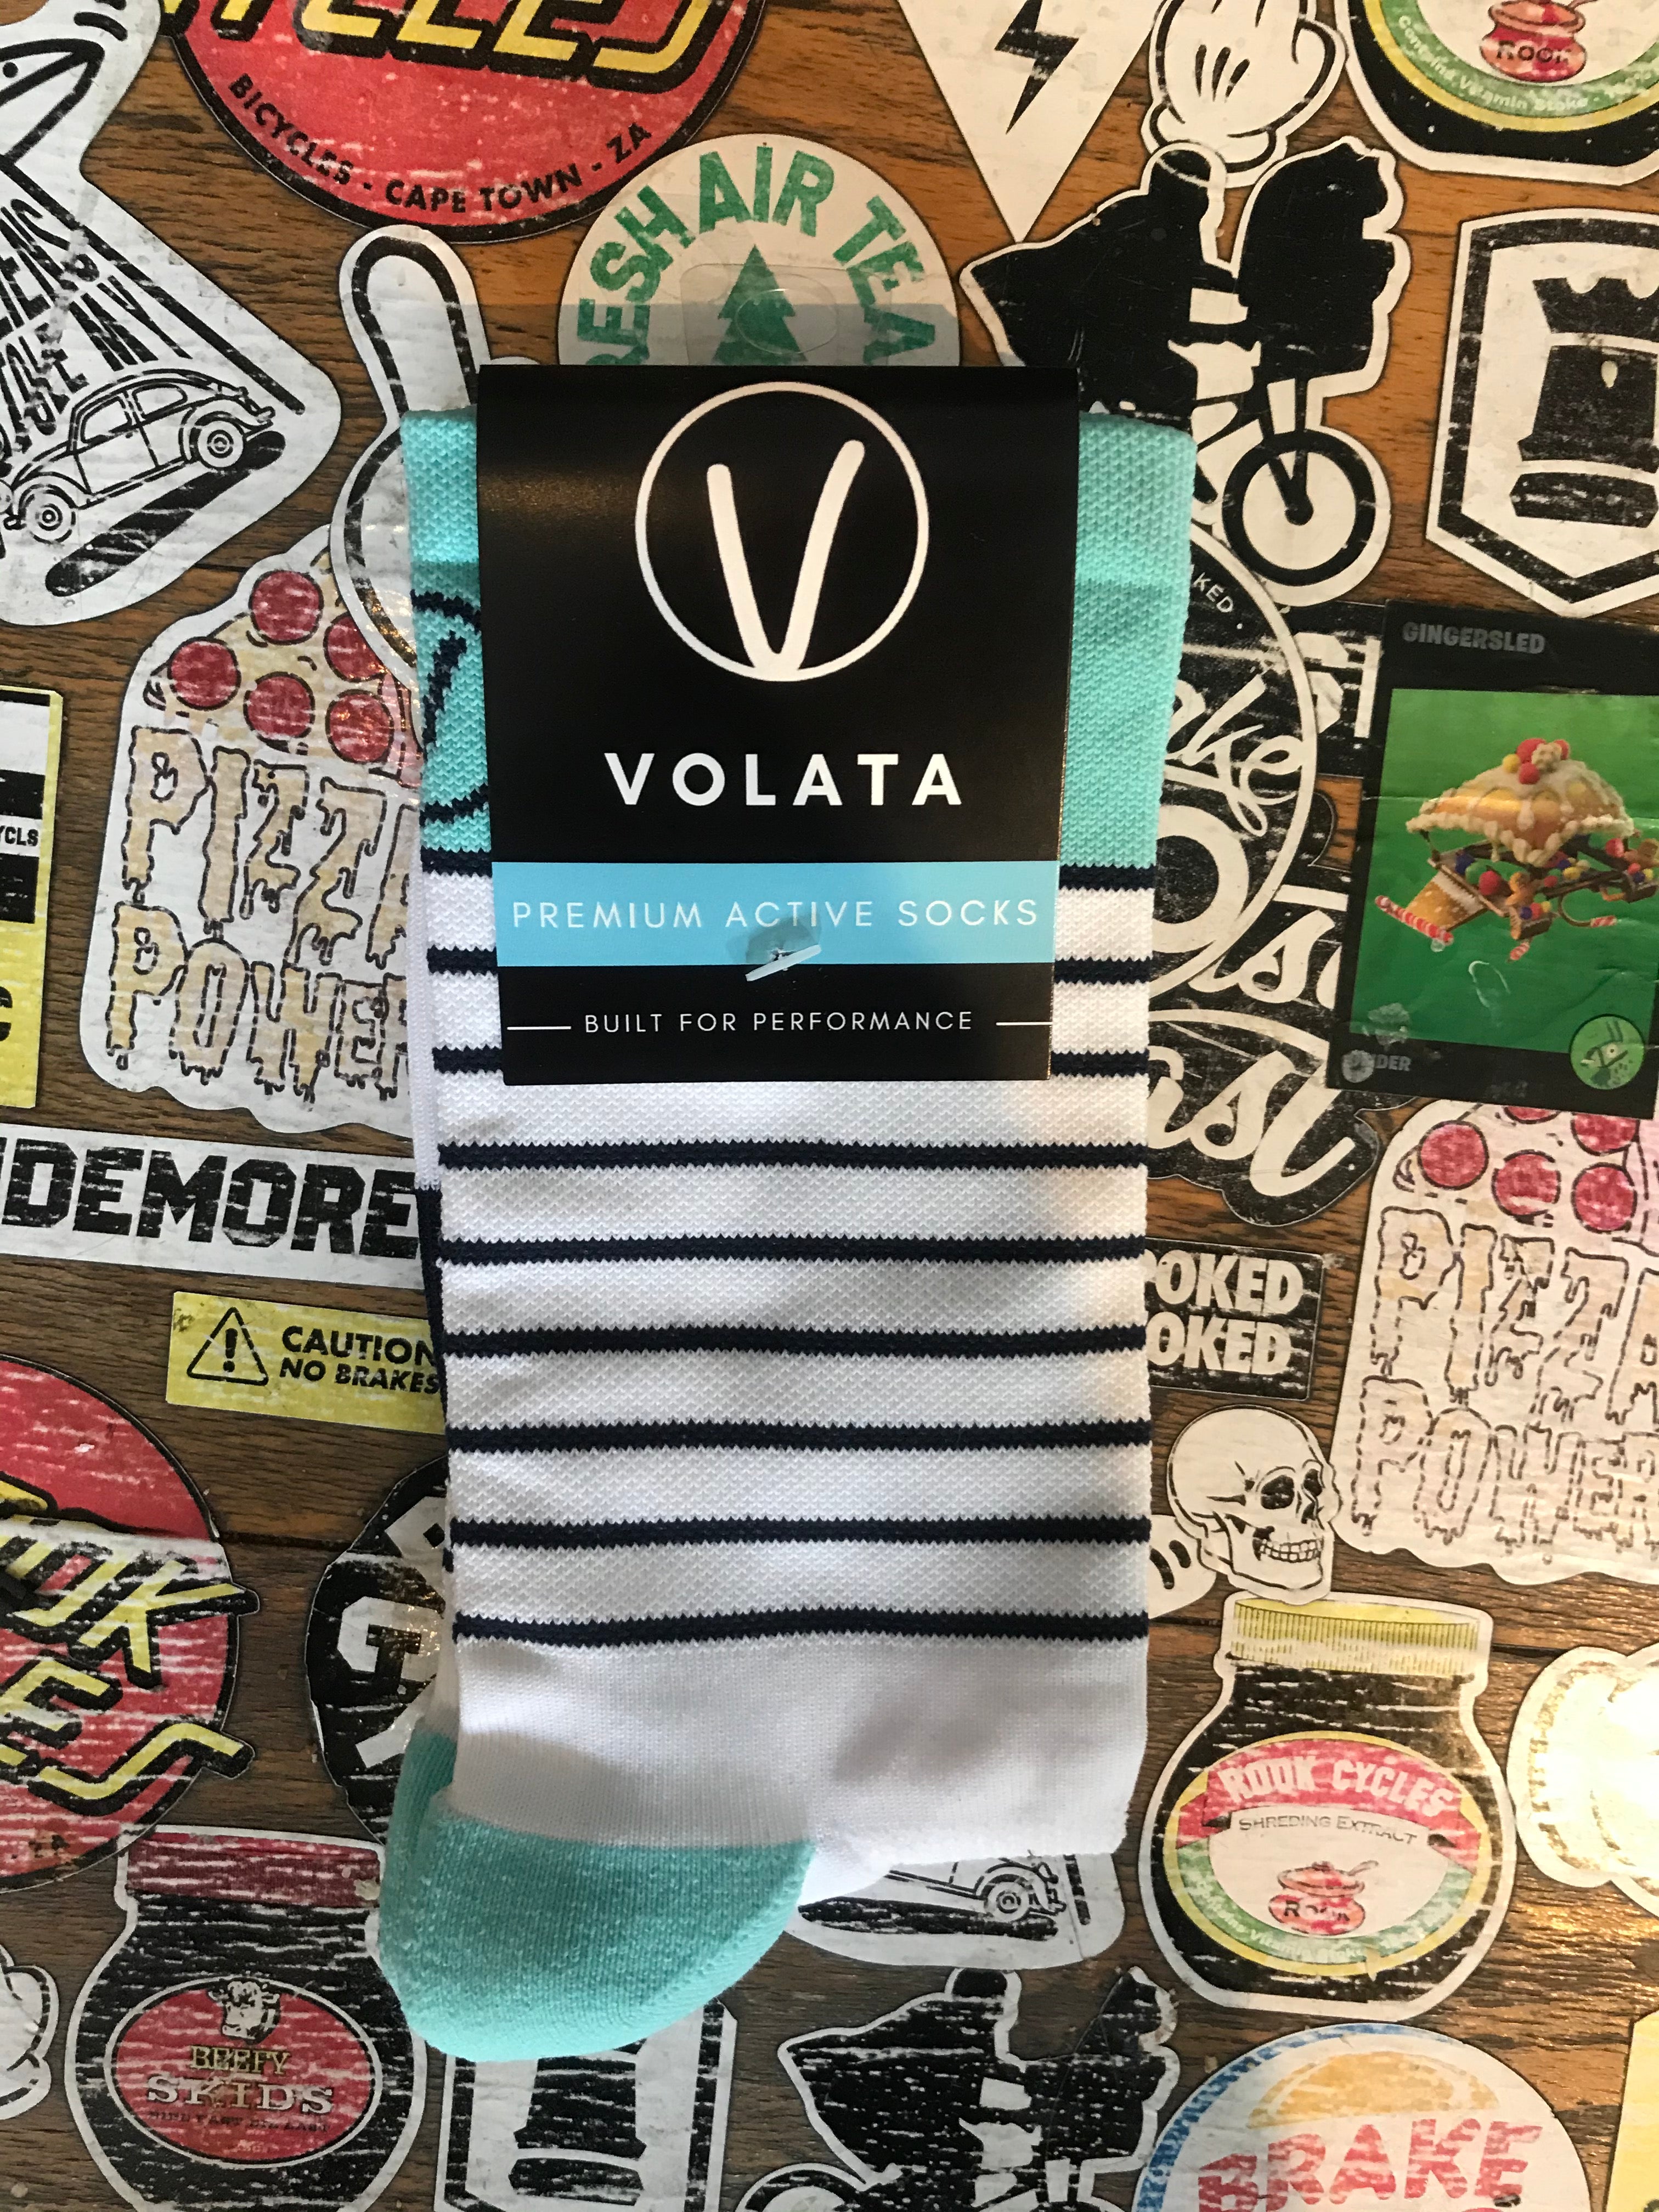 Volta Premium Active Socks